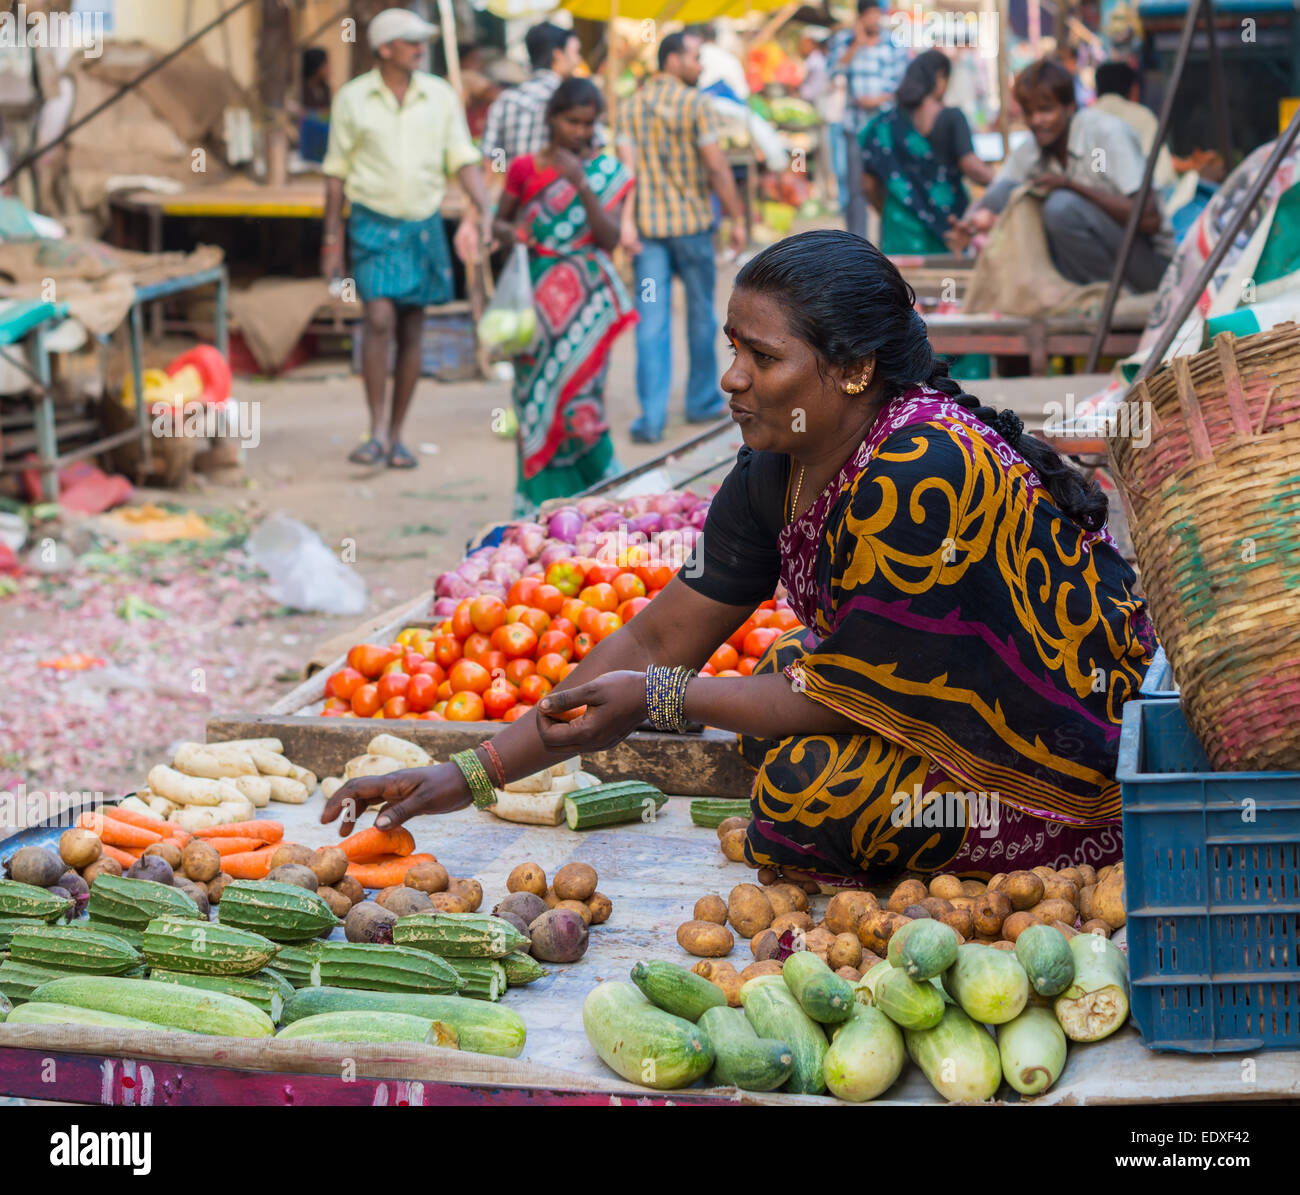 CHENNAI, INDE - 10 février : une femme vend des légumes non identifiés le 10 février 2013 à Chennai, Inde. Vegetabl frais Banque D'Images